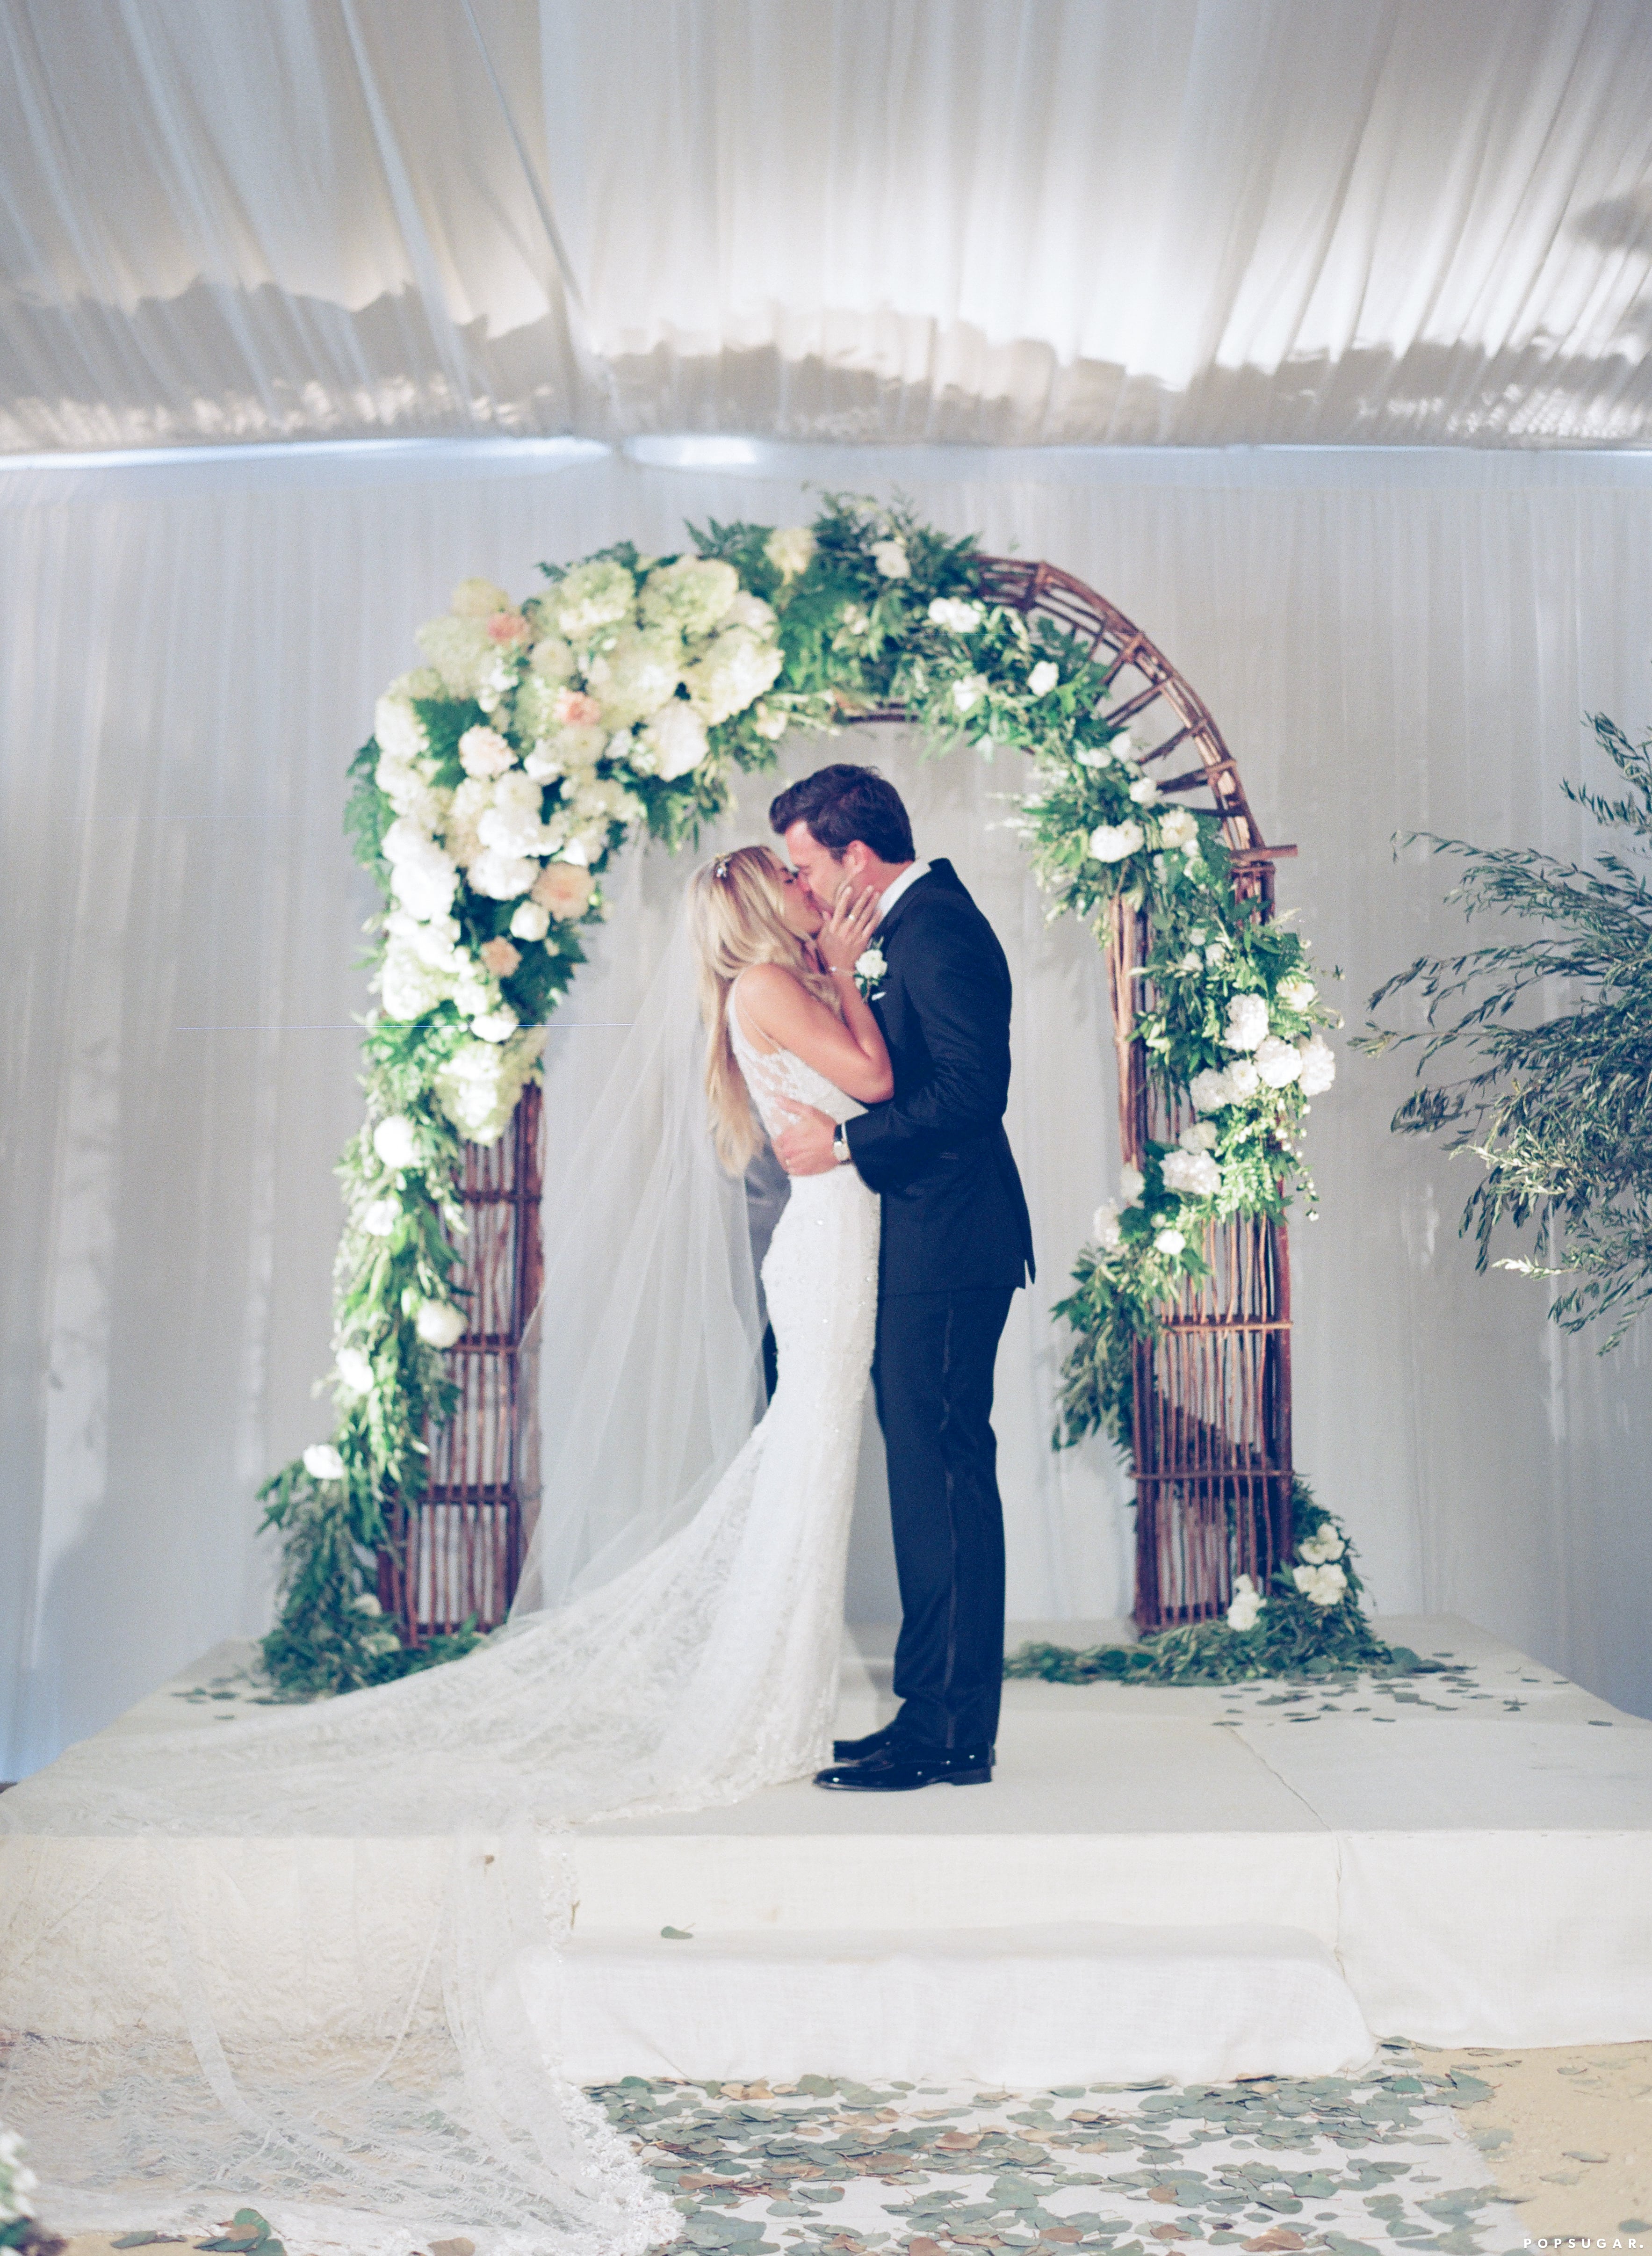 See Lauren Conrad's Wedding Dress + More Pics from Her I Dos  Lauren  conrad wedding, Lauren conrad wedding dress, Wedding gowns